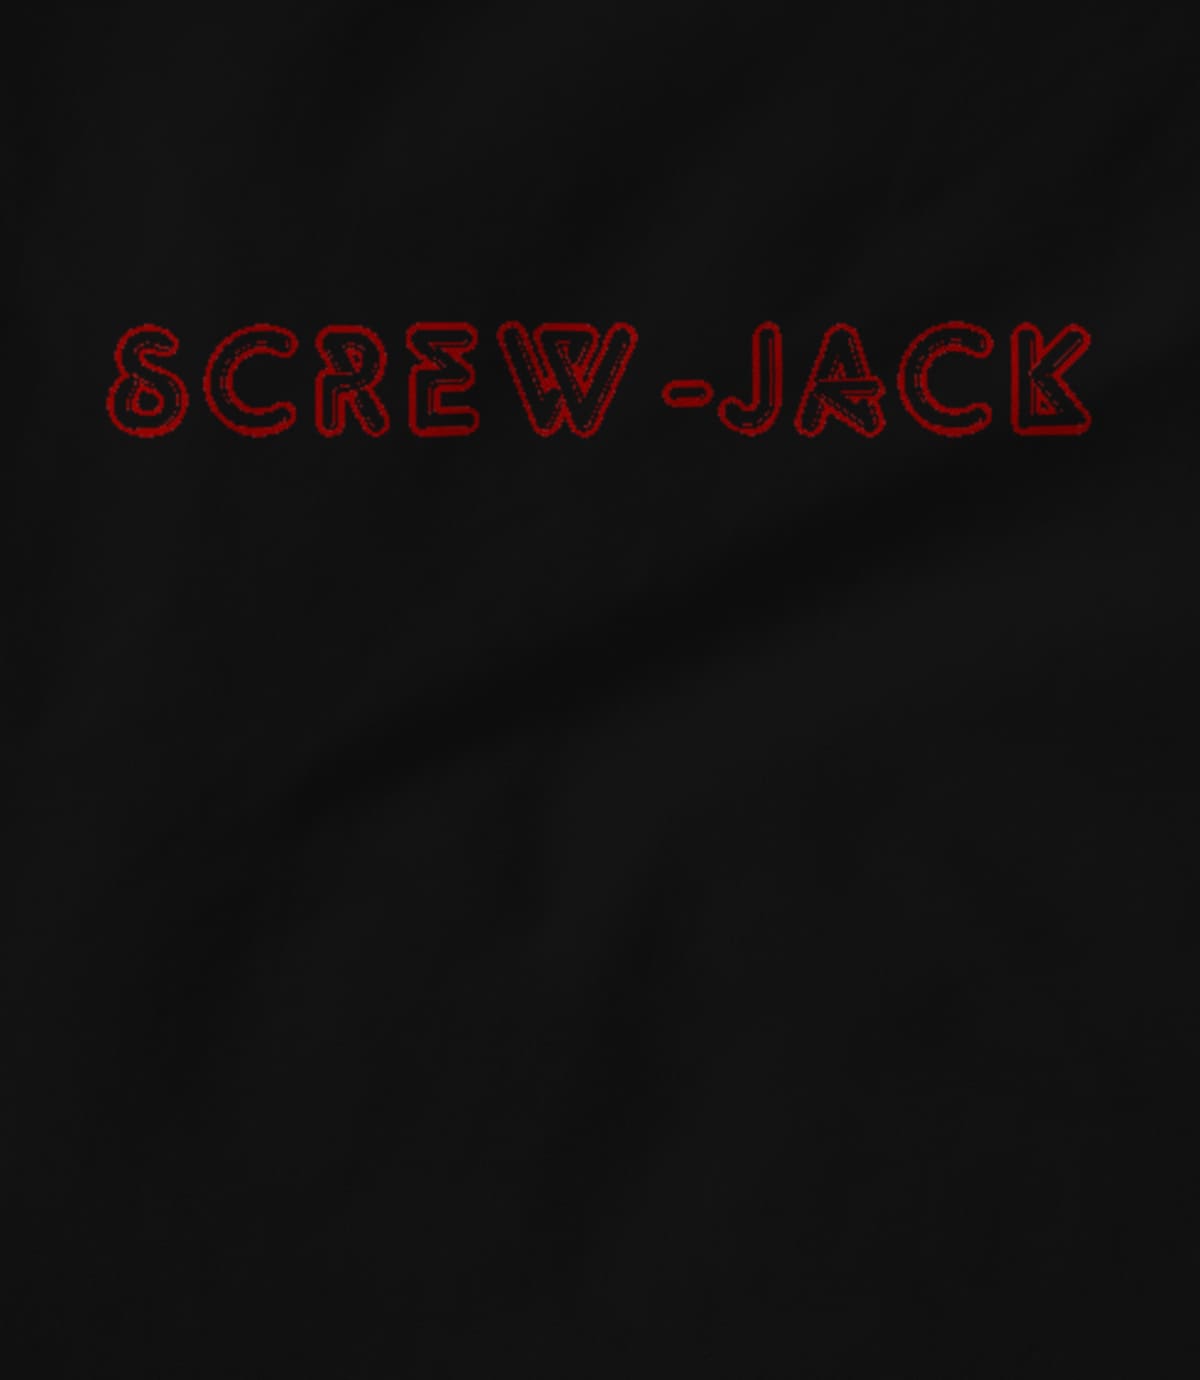 Screw-Jack